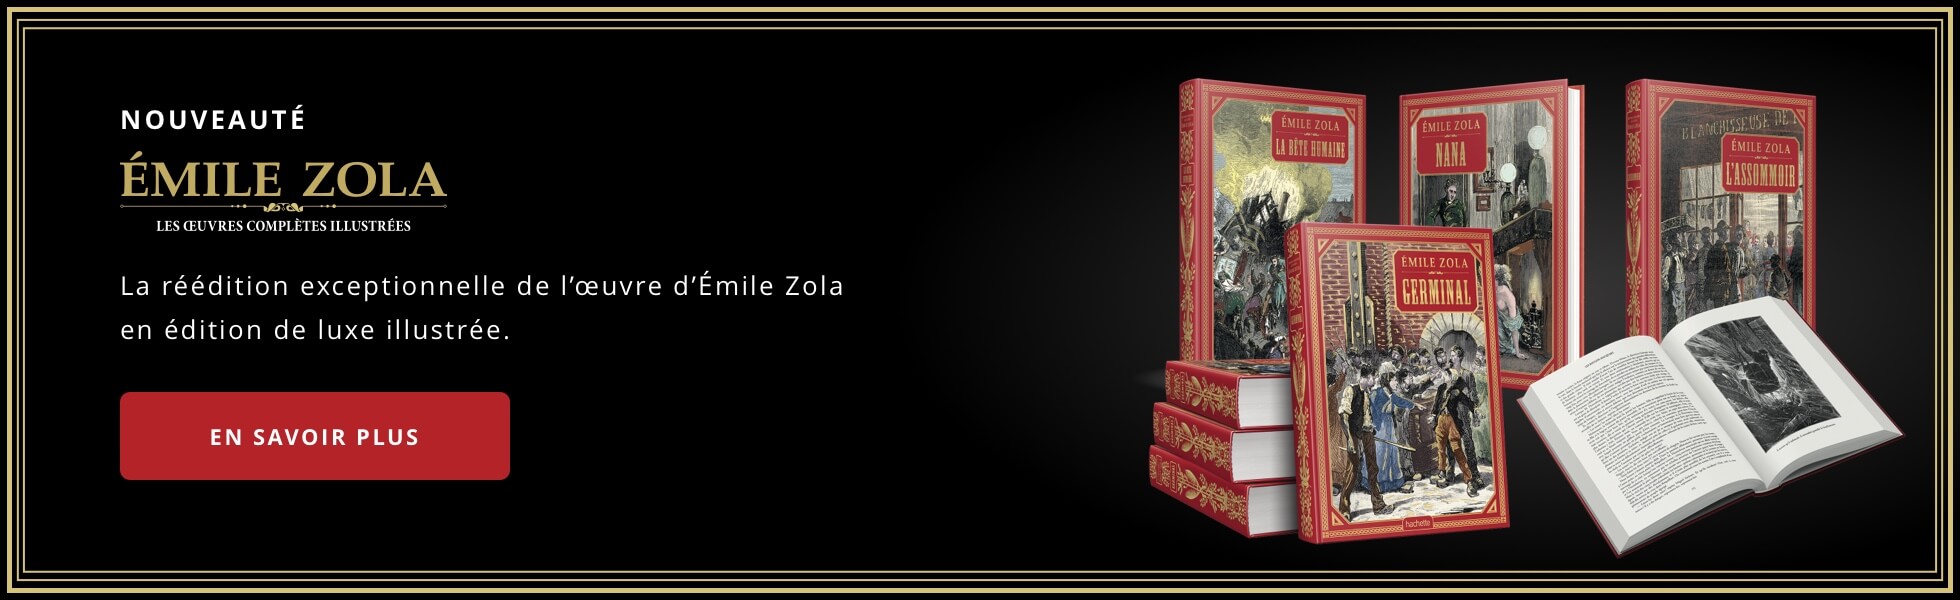 Émile Zola - Les oeuvres complètes illustrées